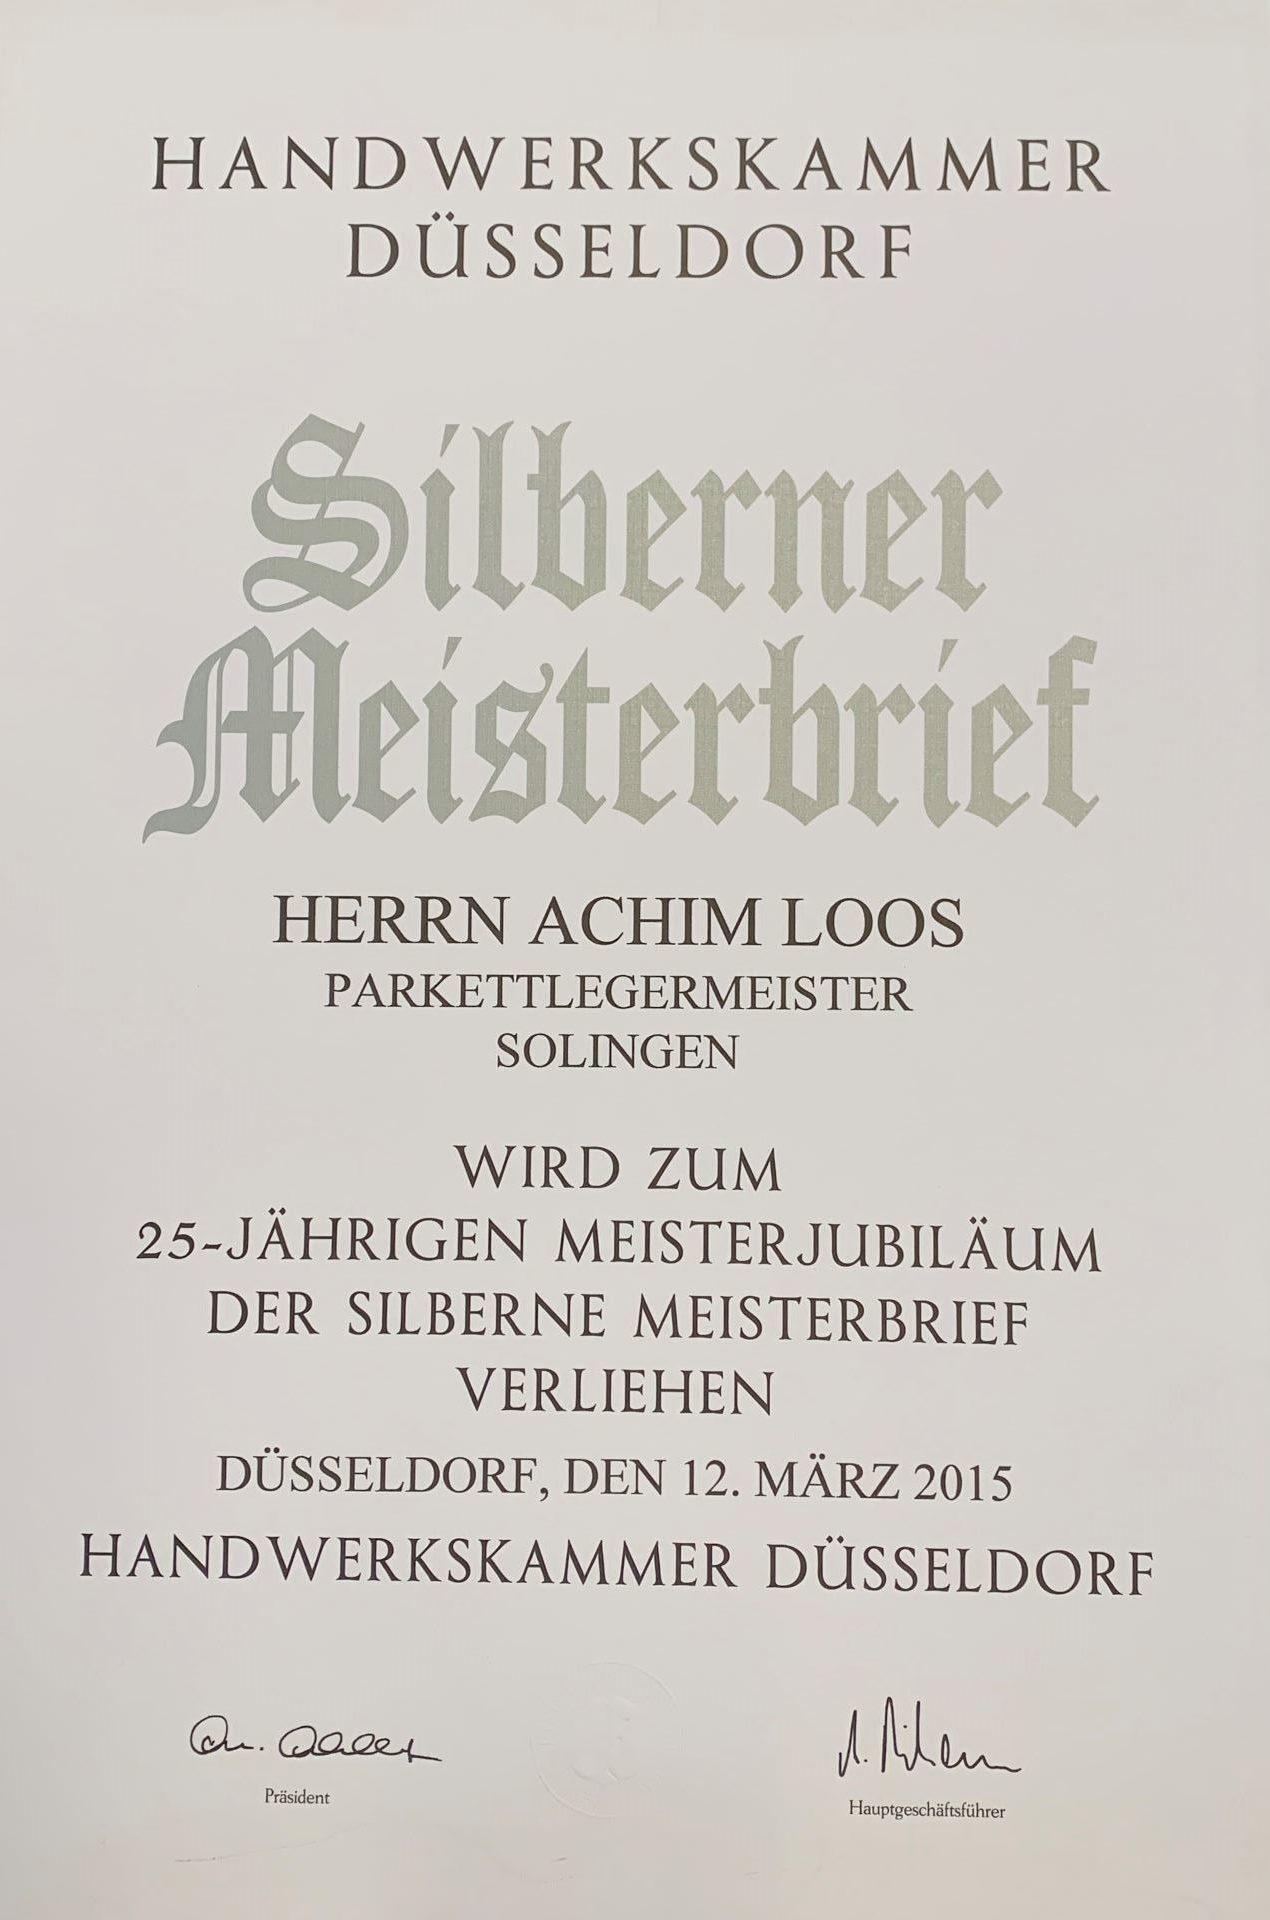 Silberner Meisterbrief